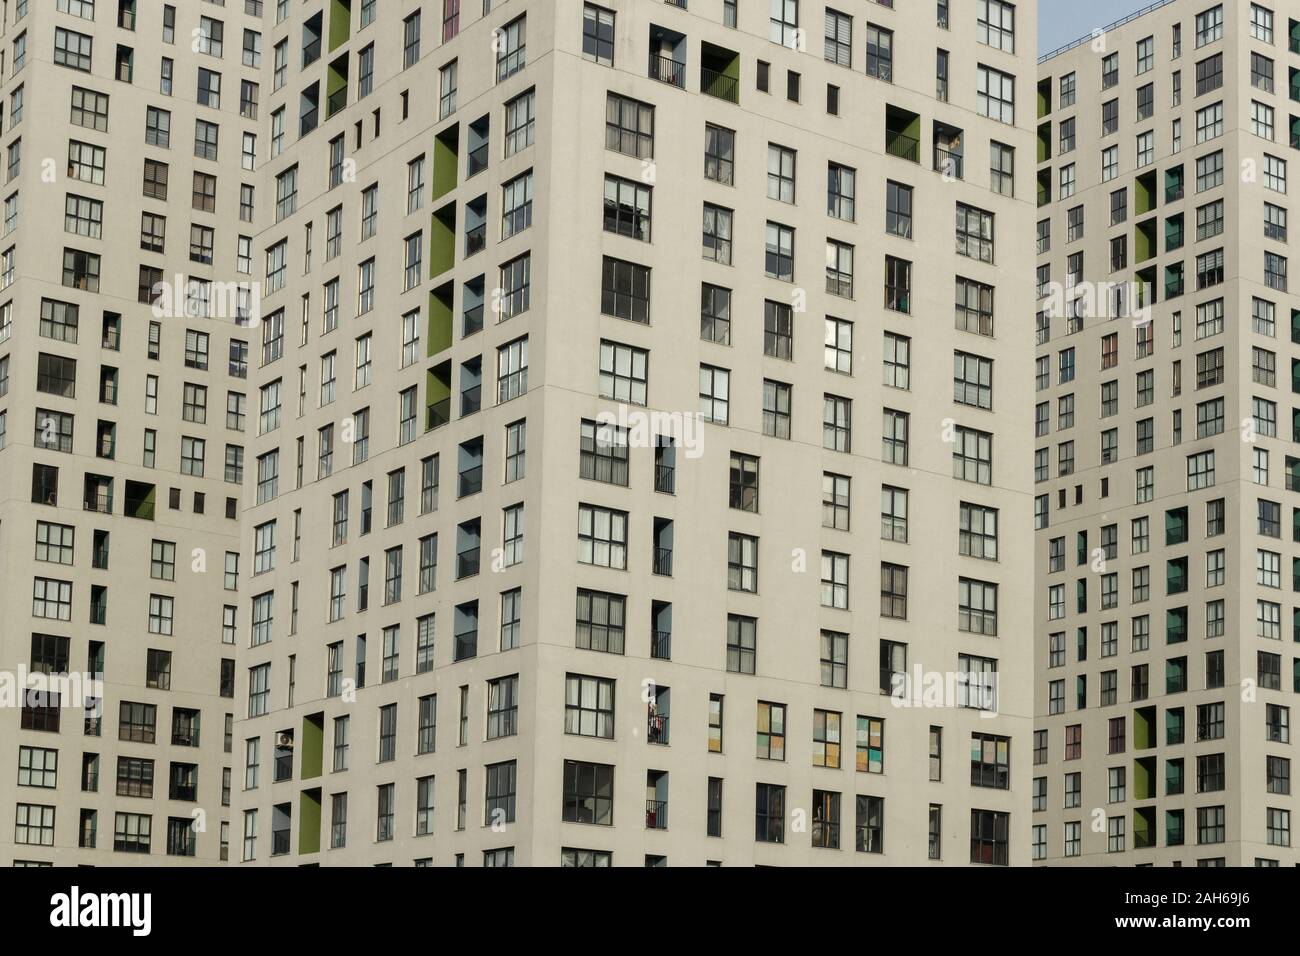 Casa de apartamentos de varios pisos, ciudad urbanización de la vida Foto de stock